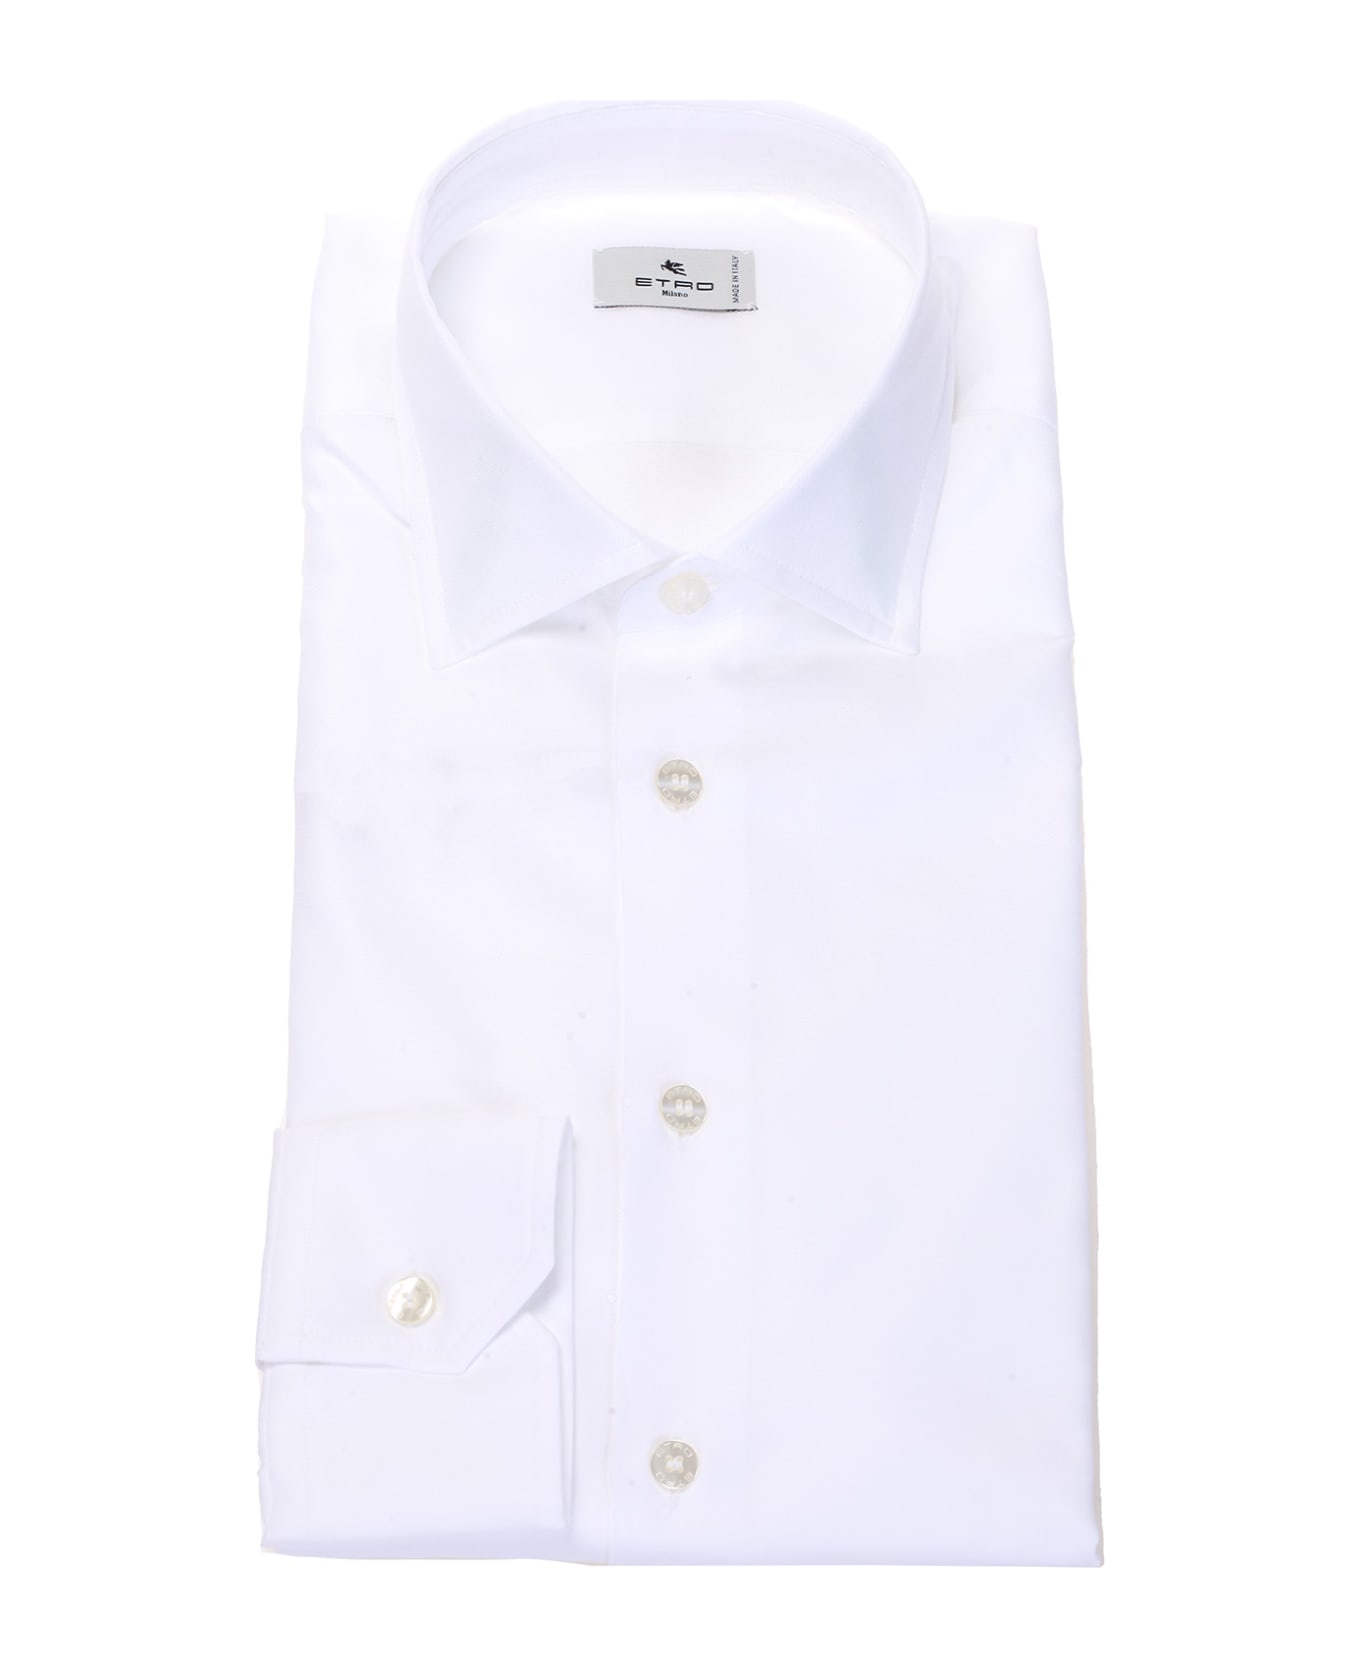 Etro Shirts White - White